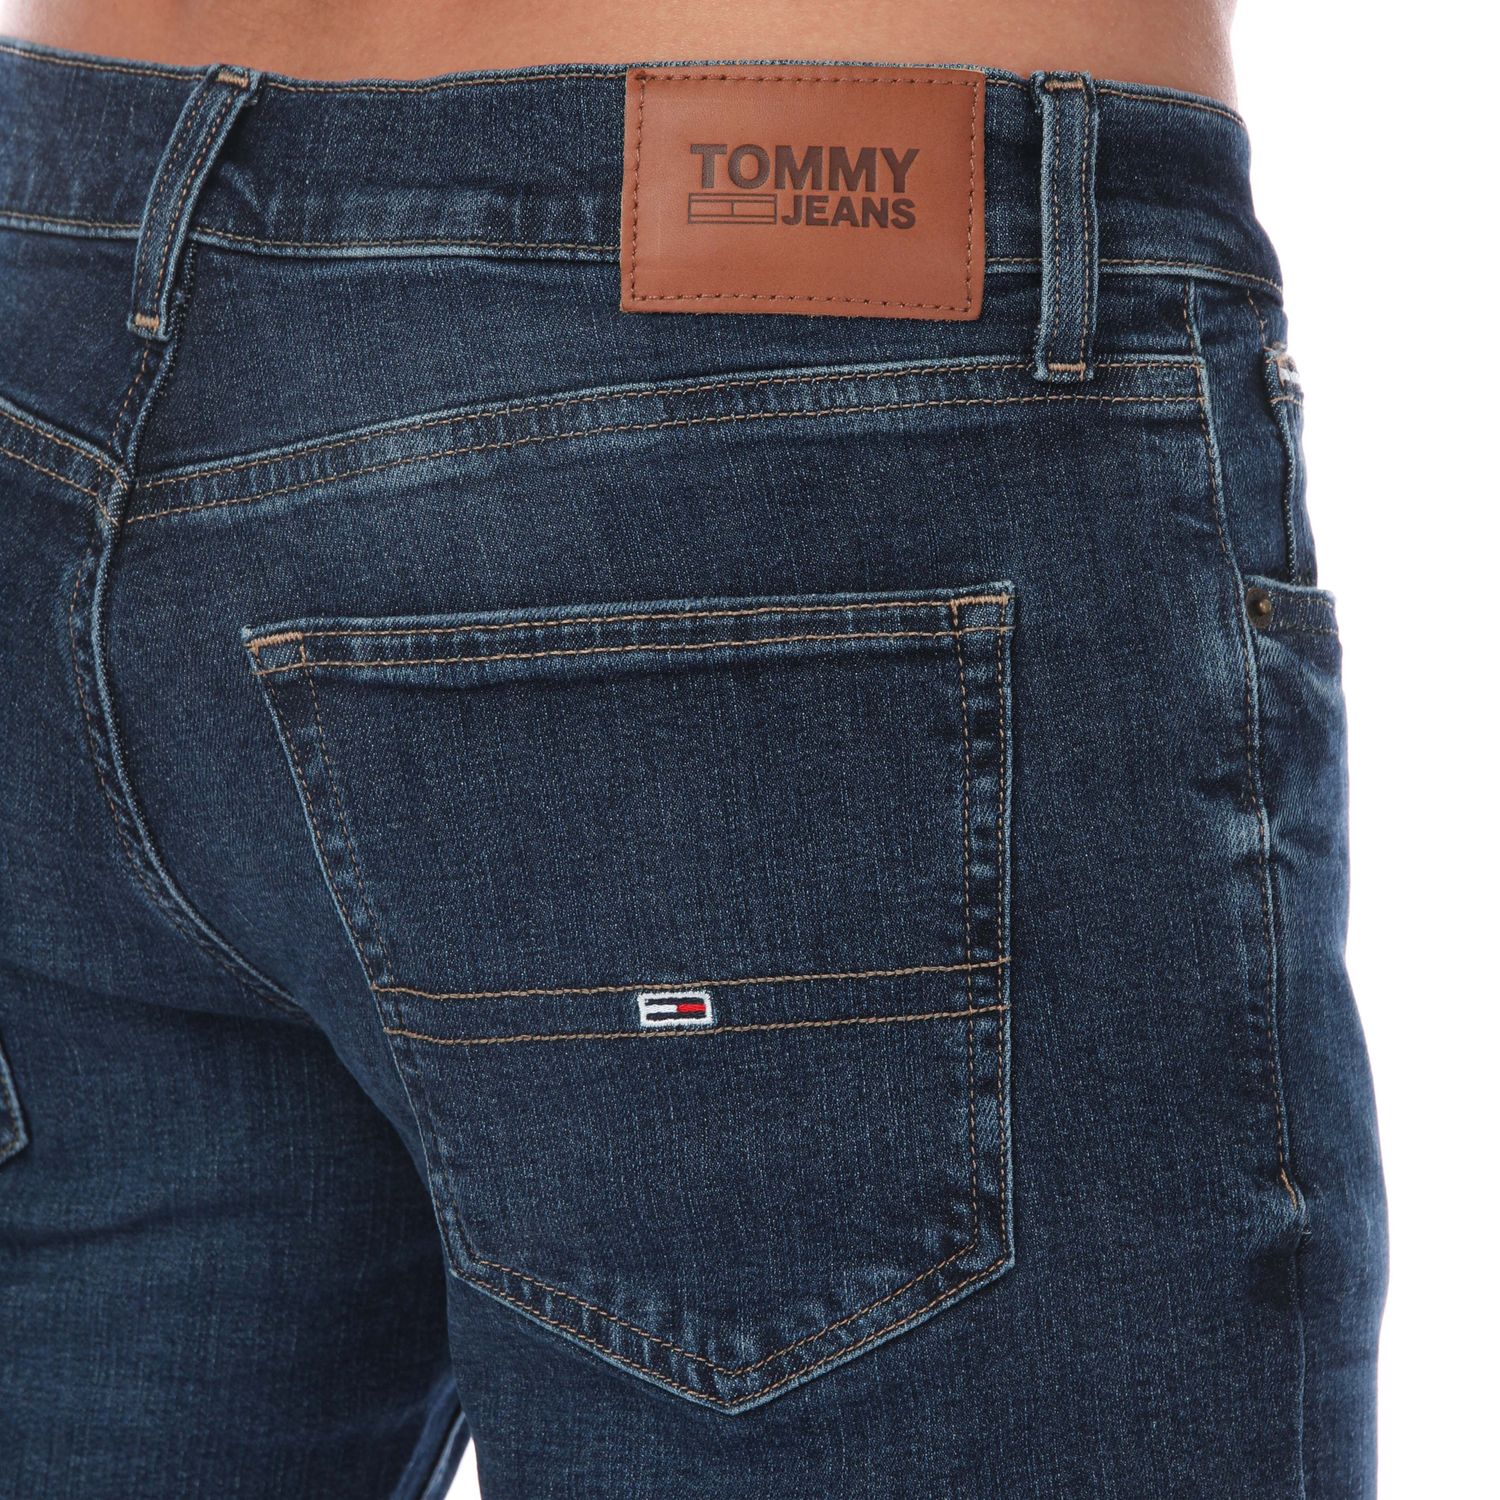 Label Slim - Get Blue The Fit Jeans Hilfiger Tommy Dark Mens Scanton